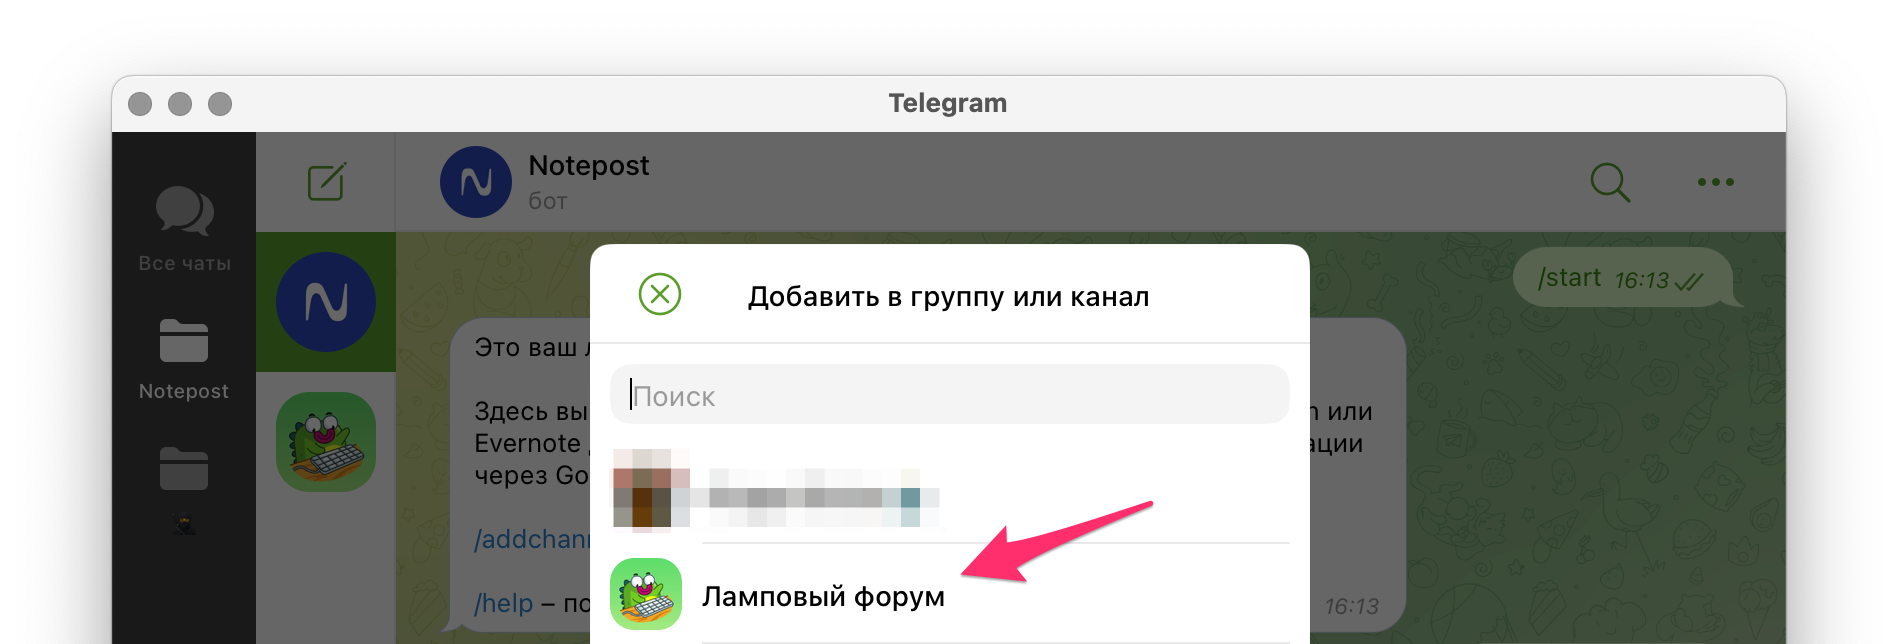 Подключить телеграмм на телефон бесплатно на русском языке пошагово как установить фото 100